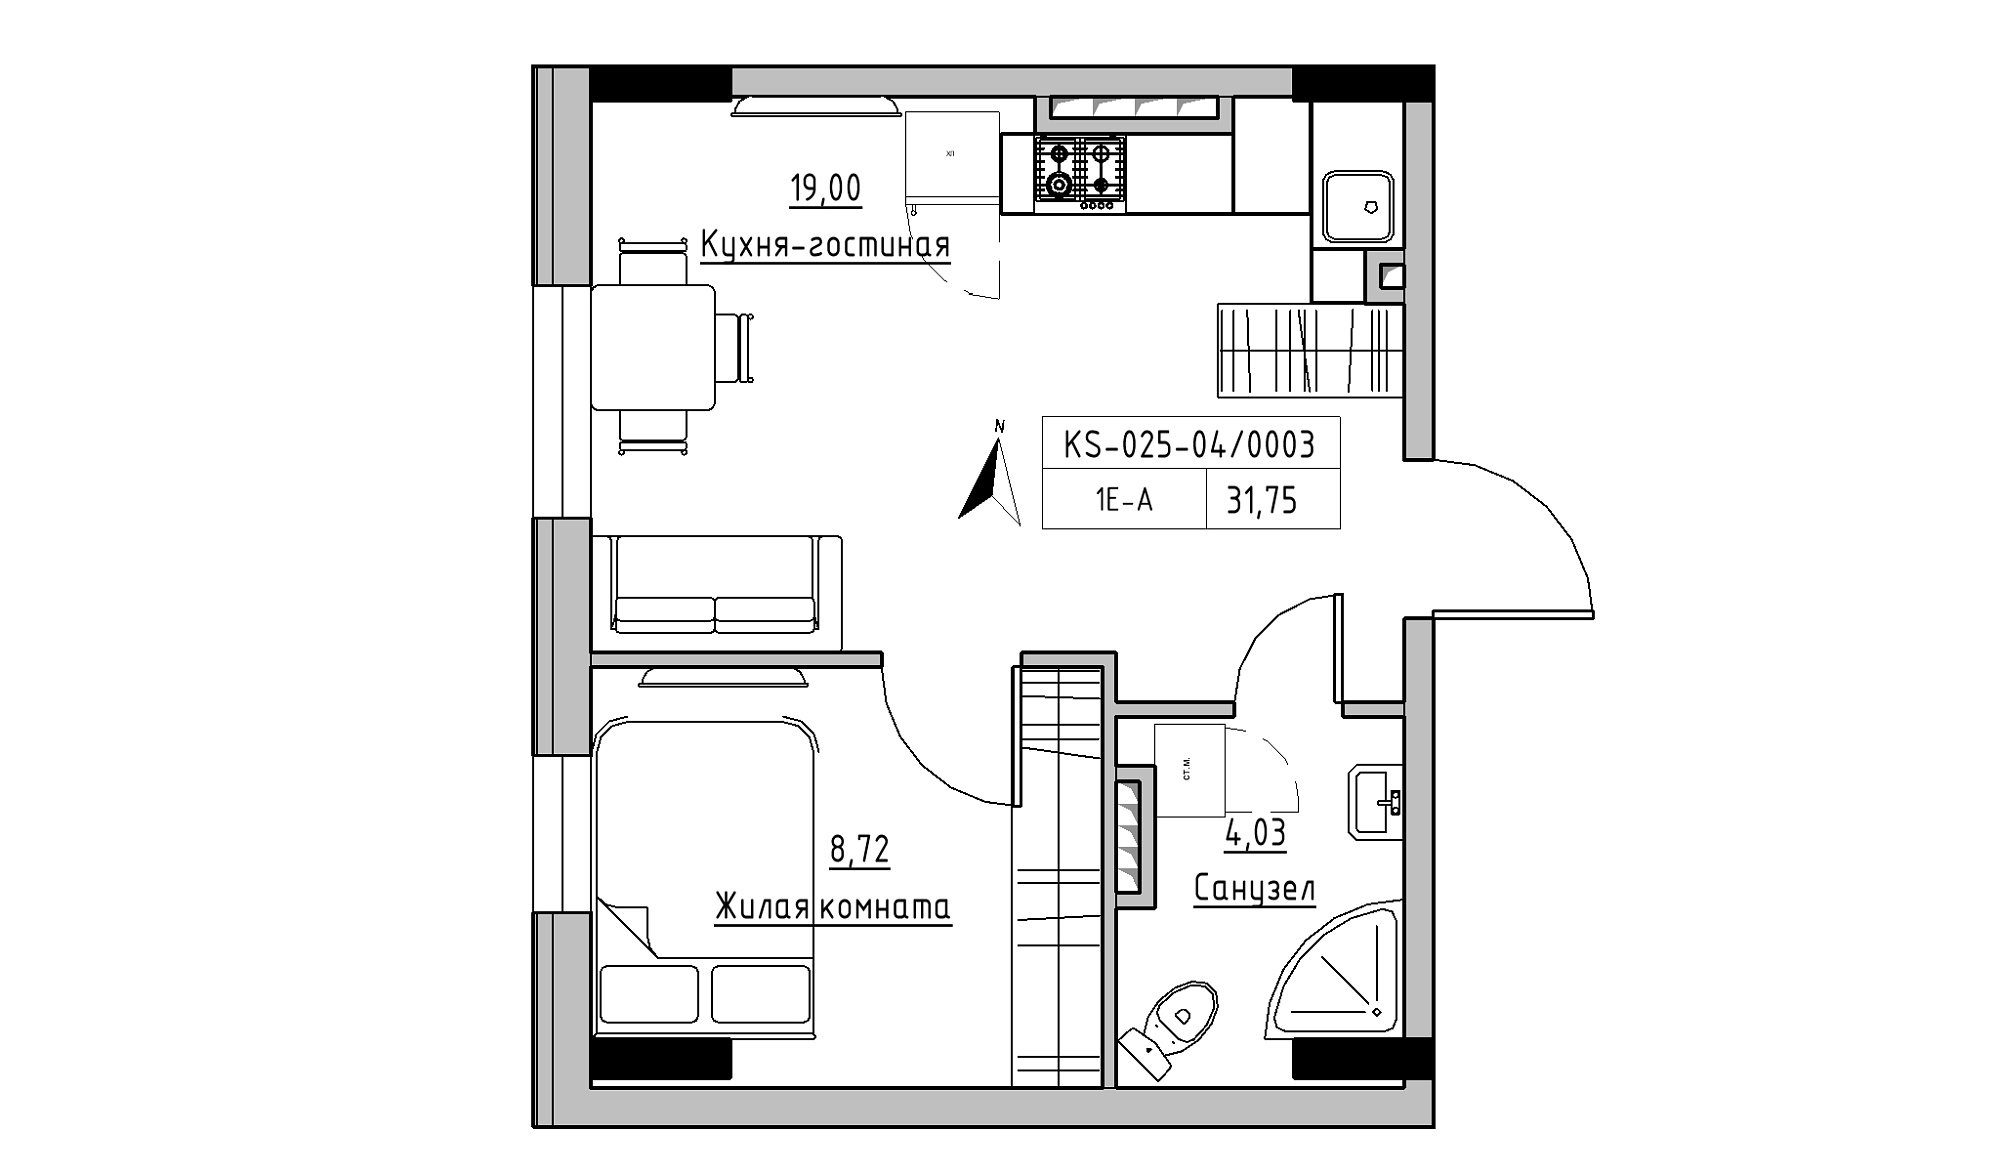 Планування 1-к квартира площею 31.75м2, KS-025-04/0003.